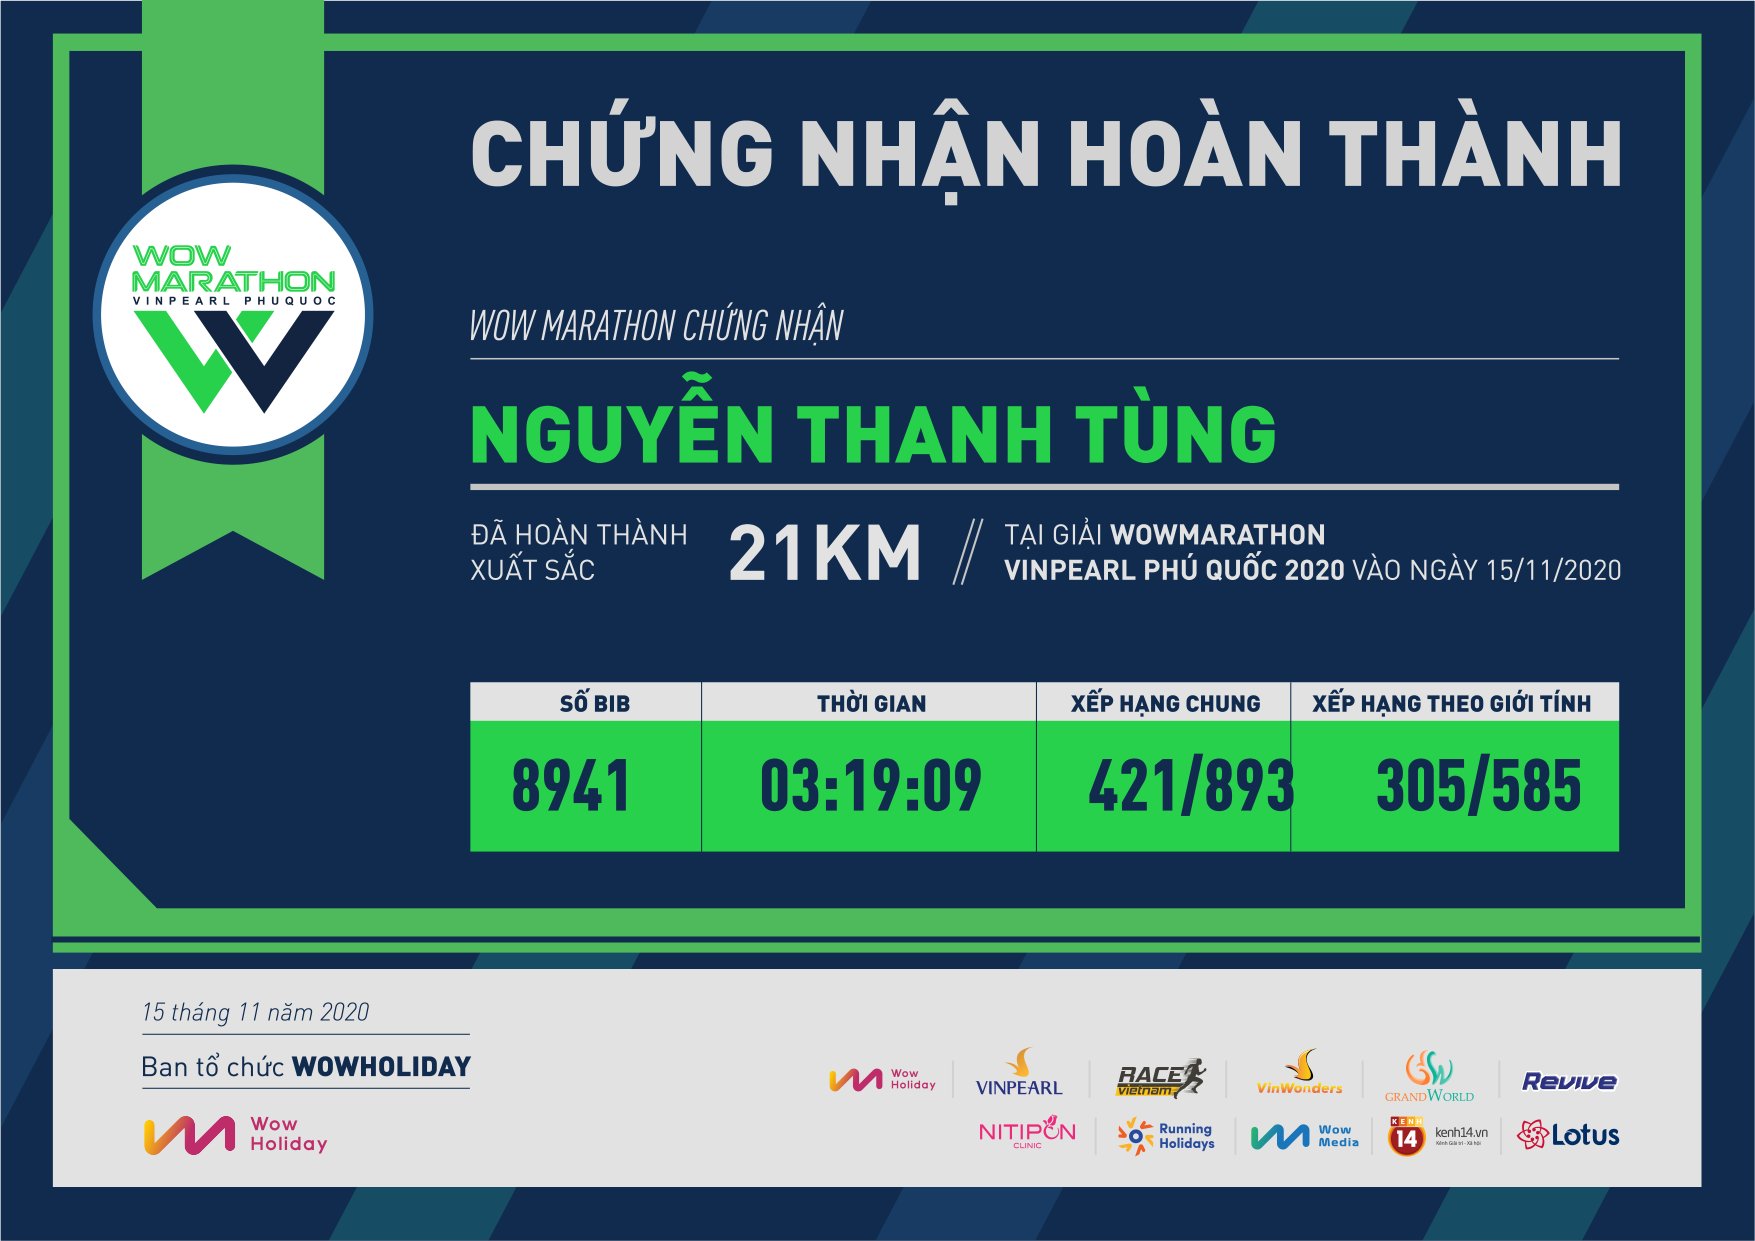 8941 - Nguyễn Thanh Tùng